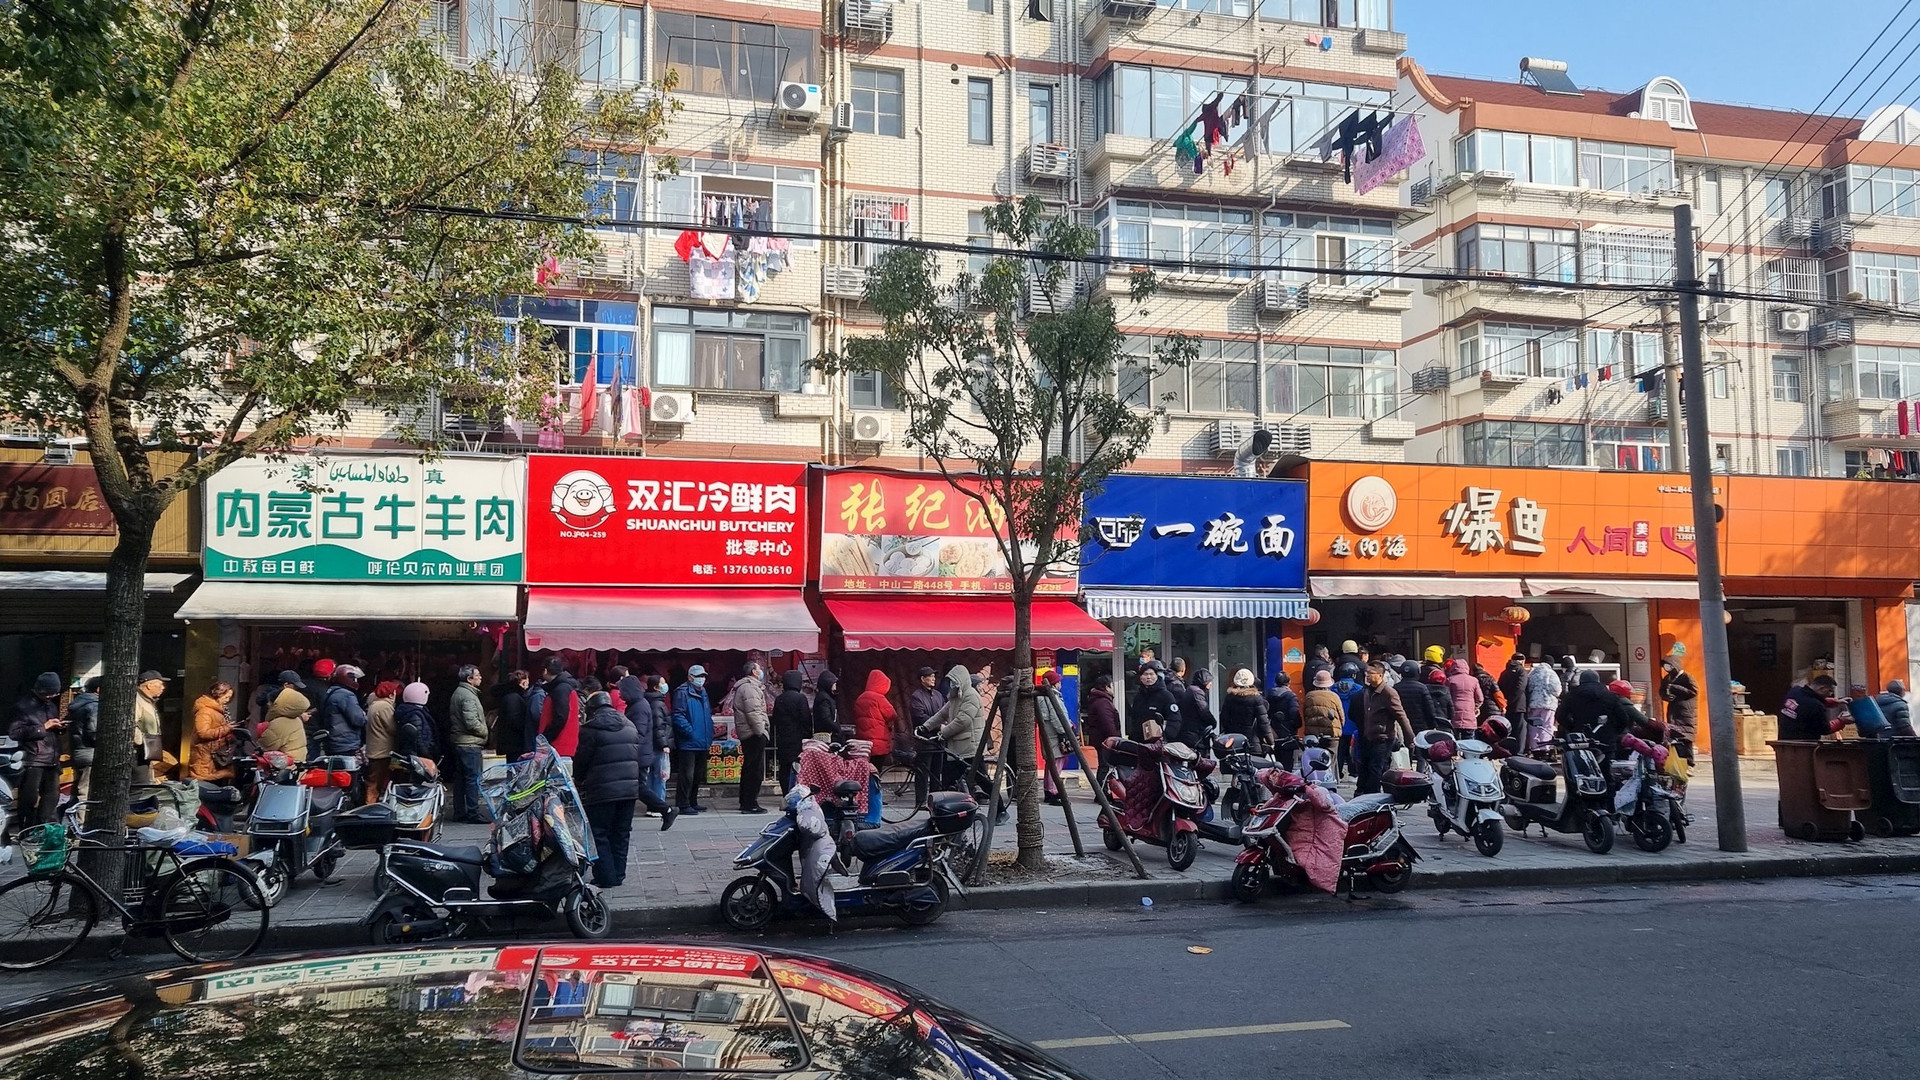 Du học sinh Việt trải nghiệm chợ Tết của người Trung Quốc: Bất ngờ với sản phẩm “cháy hàng” nhanh nhất, không phải hoa quả hay kẹo bánh mà là món rất quen thuộc với mọi nhà- Ảnh 2.